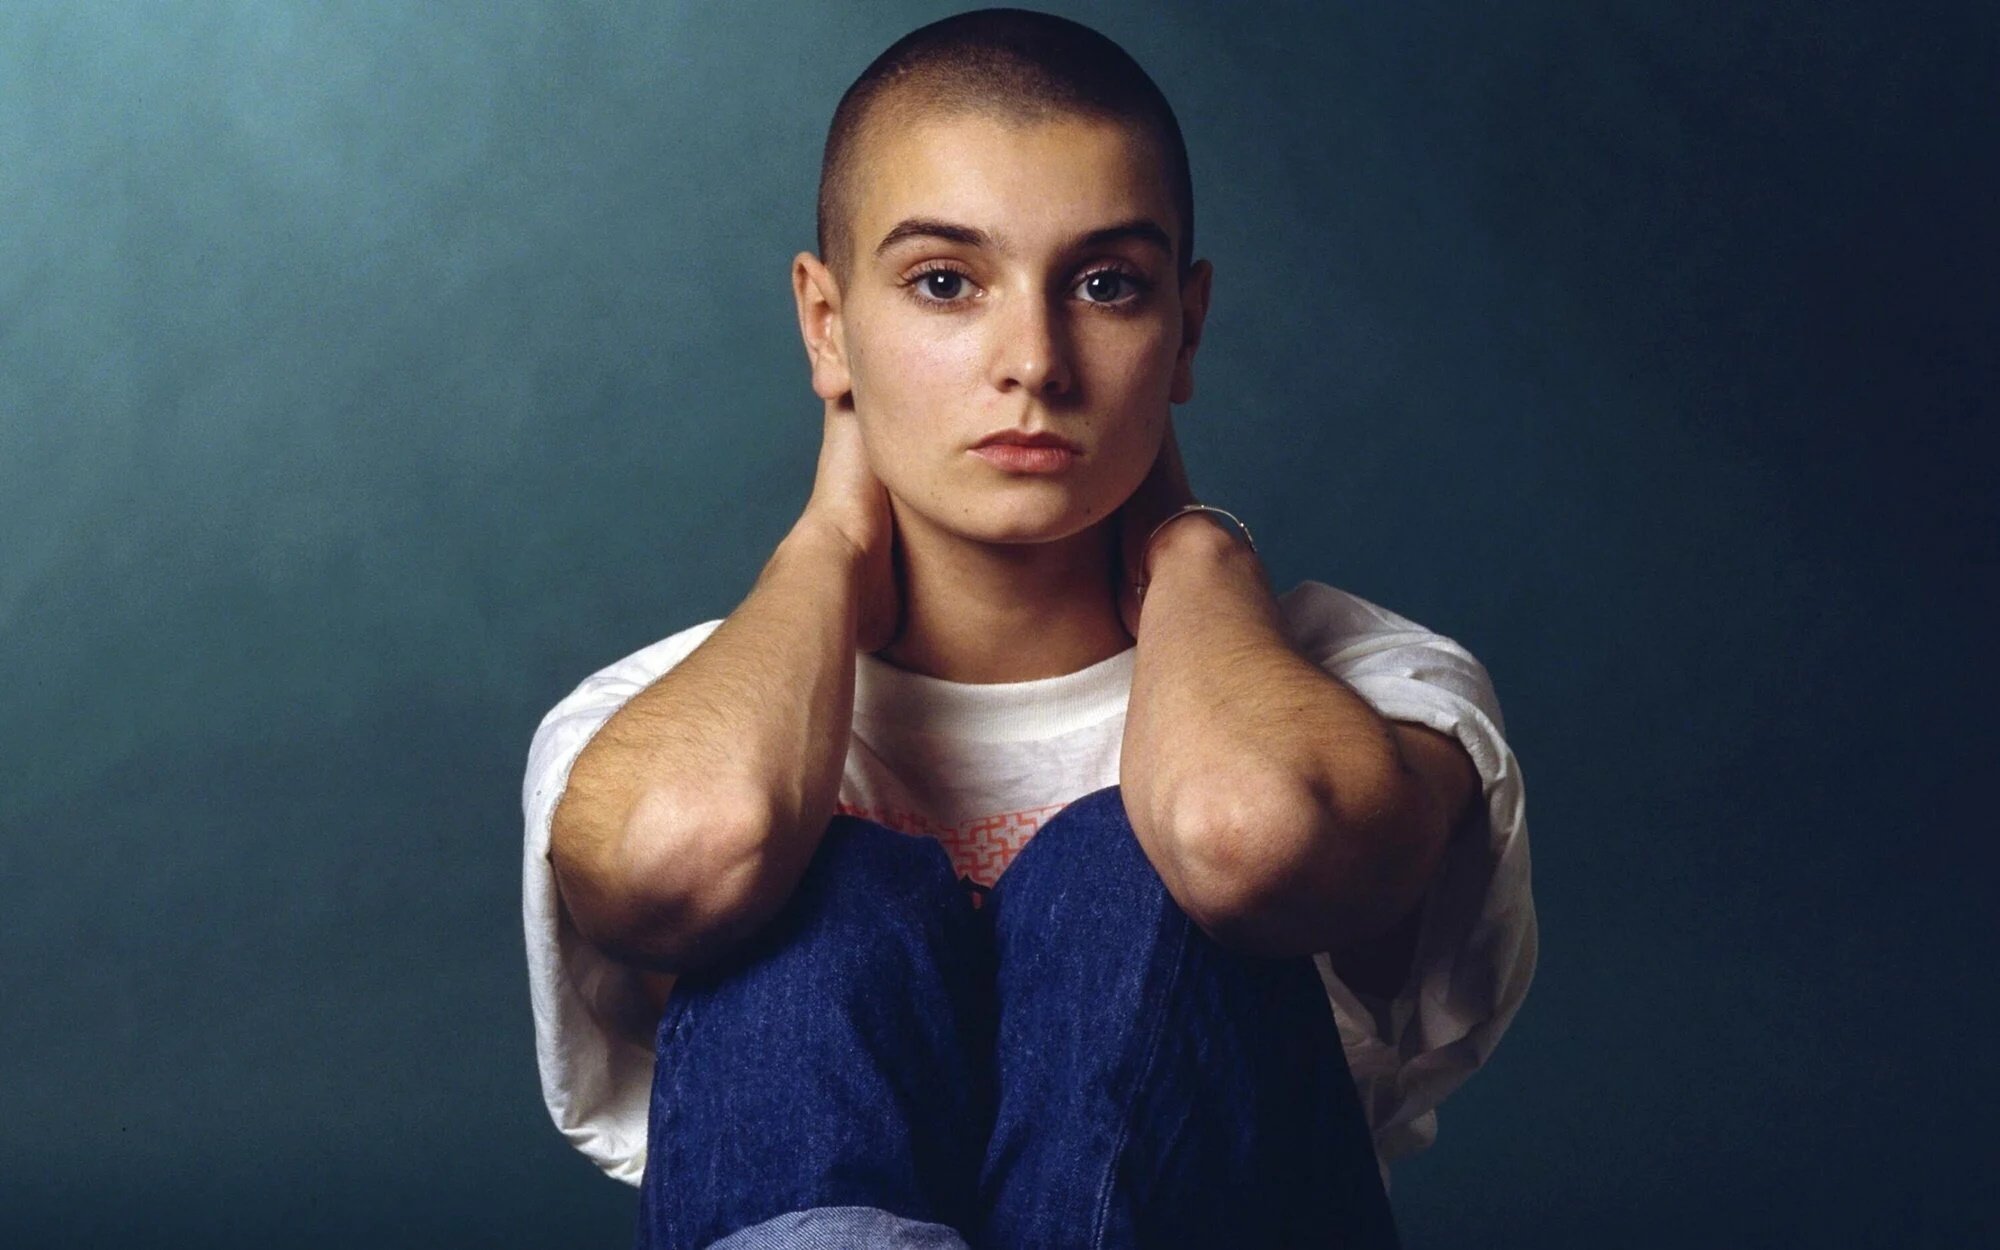 "Fuiste TÚ quien convenció a Sinéad para que se rindiera", el emotivo adiós de Morrissey a Sinéad O'Connor